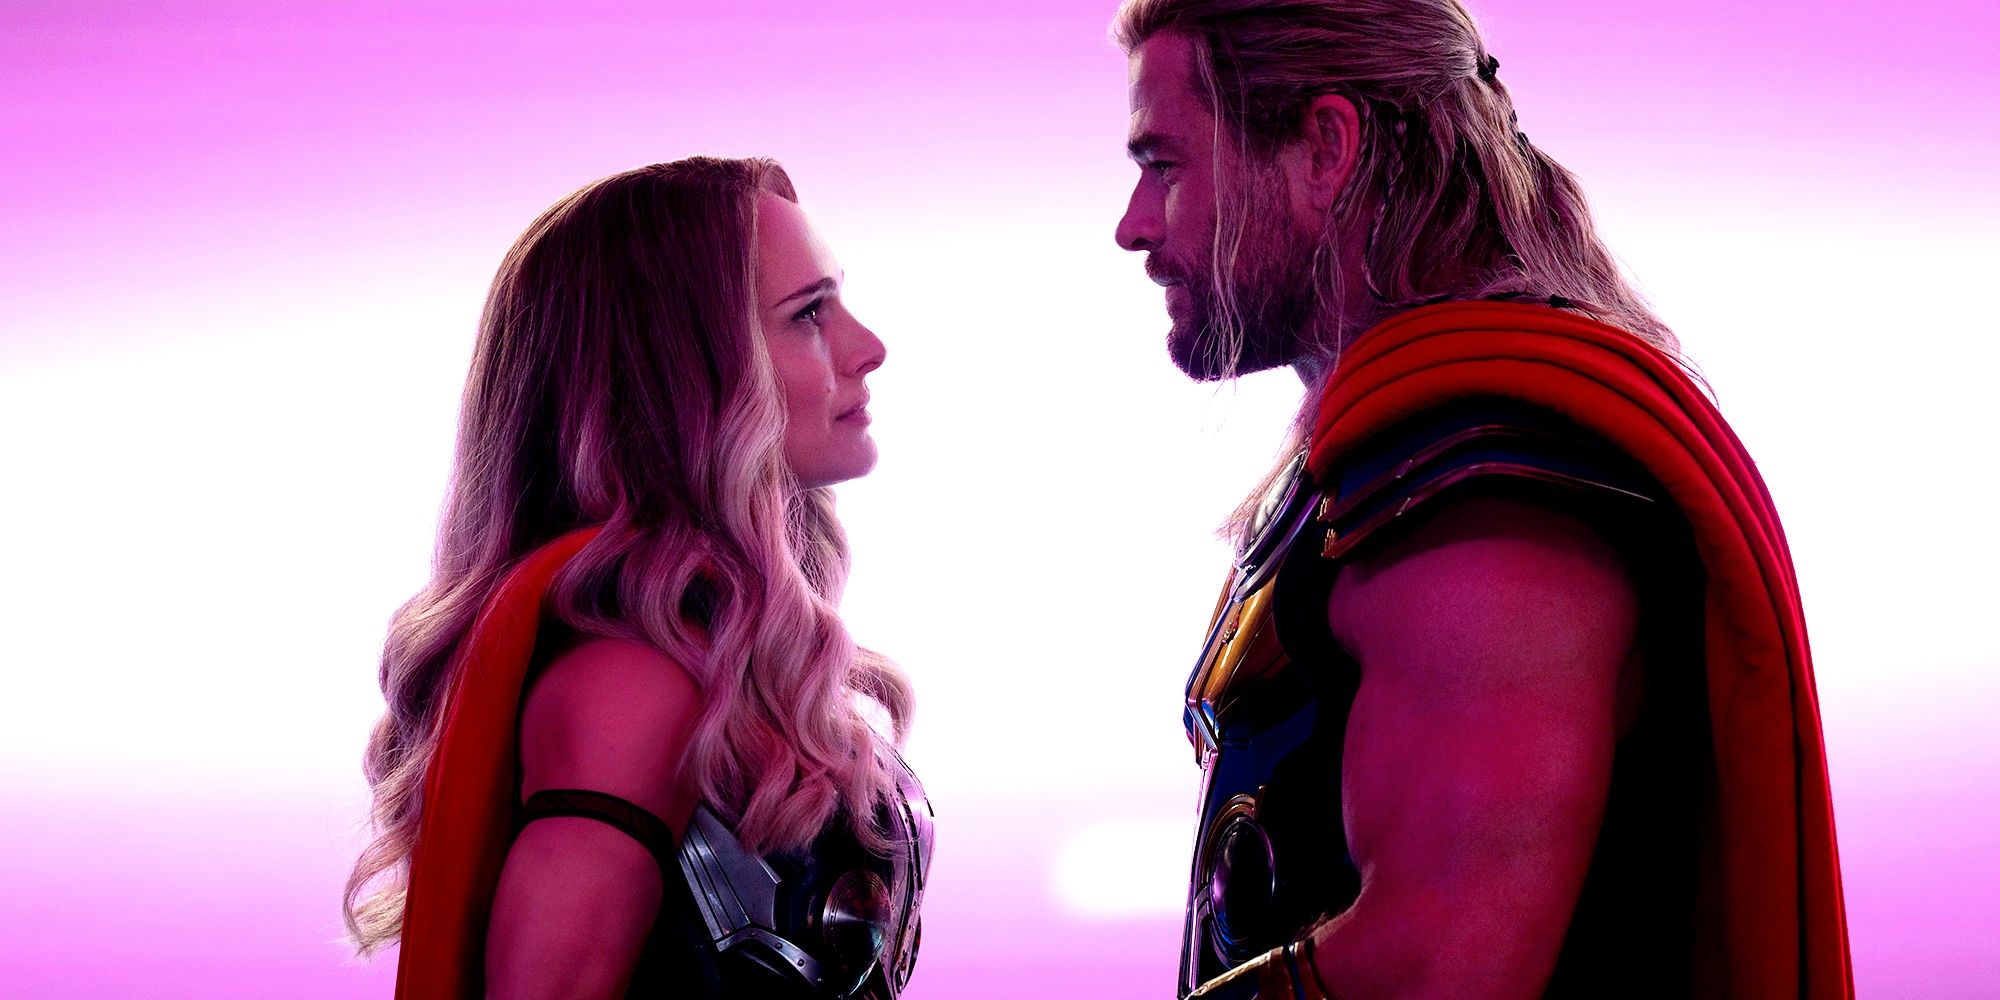 Nueva imagen de Love & Thunder muestra la reunión de Thor y Jane después de 8 años